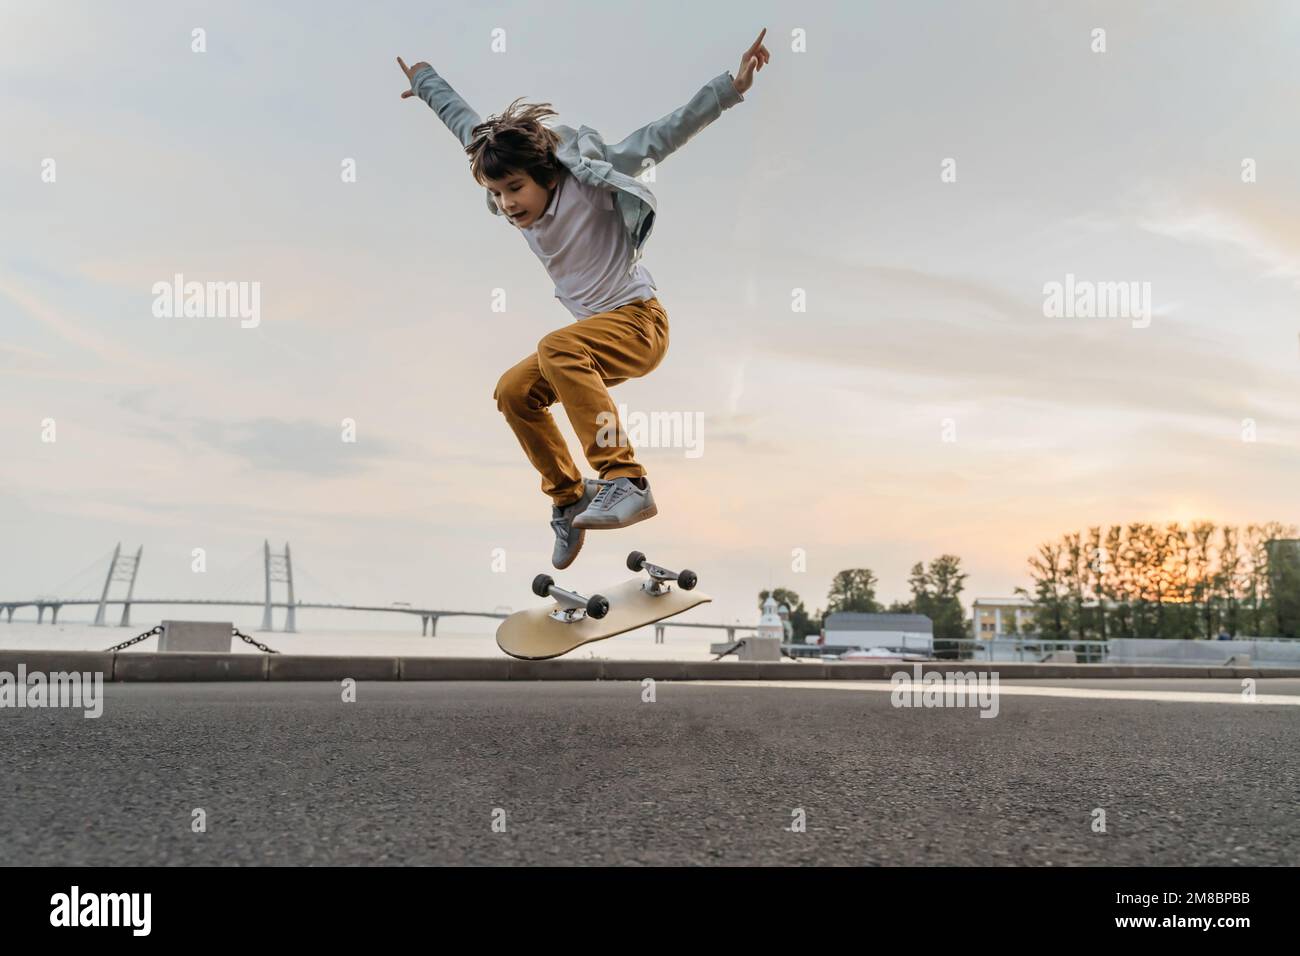 Niño saltando en patineta en la calle. Divertido niño patinador practicando ollie en skateboard al atardecer. Foto de stock